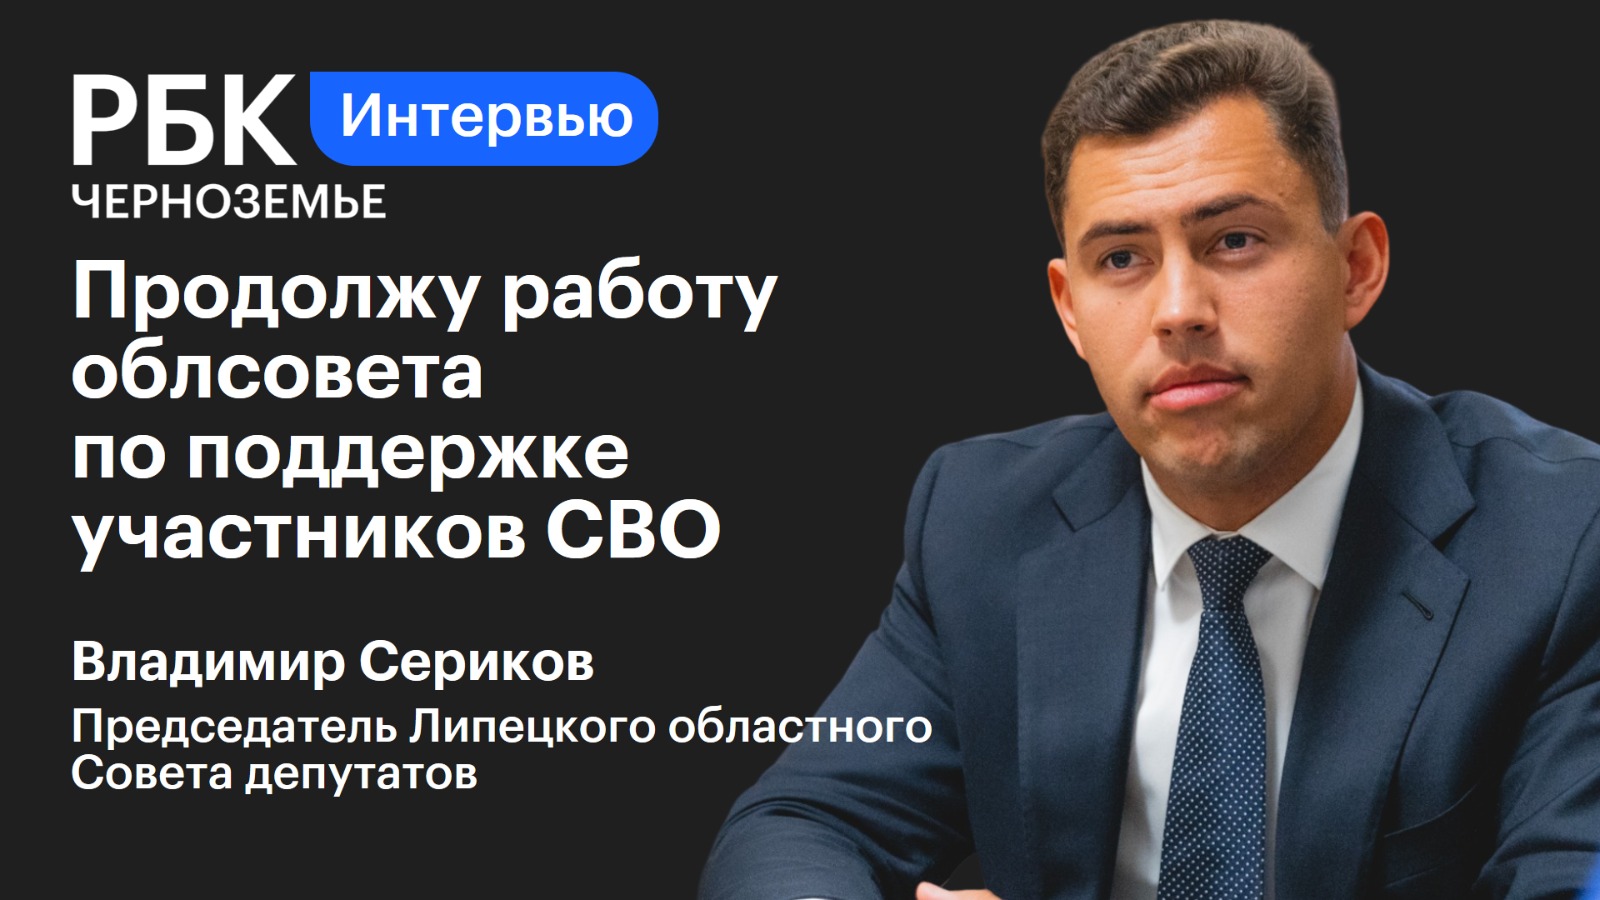 Владимир Сериков: «Продолжу работу облсовета по поддержке участников СВО»